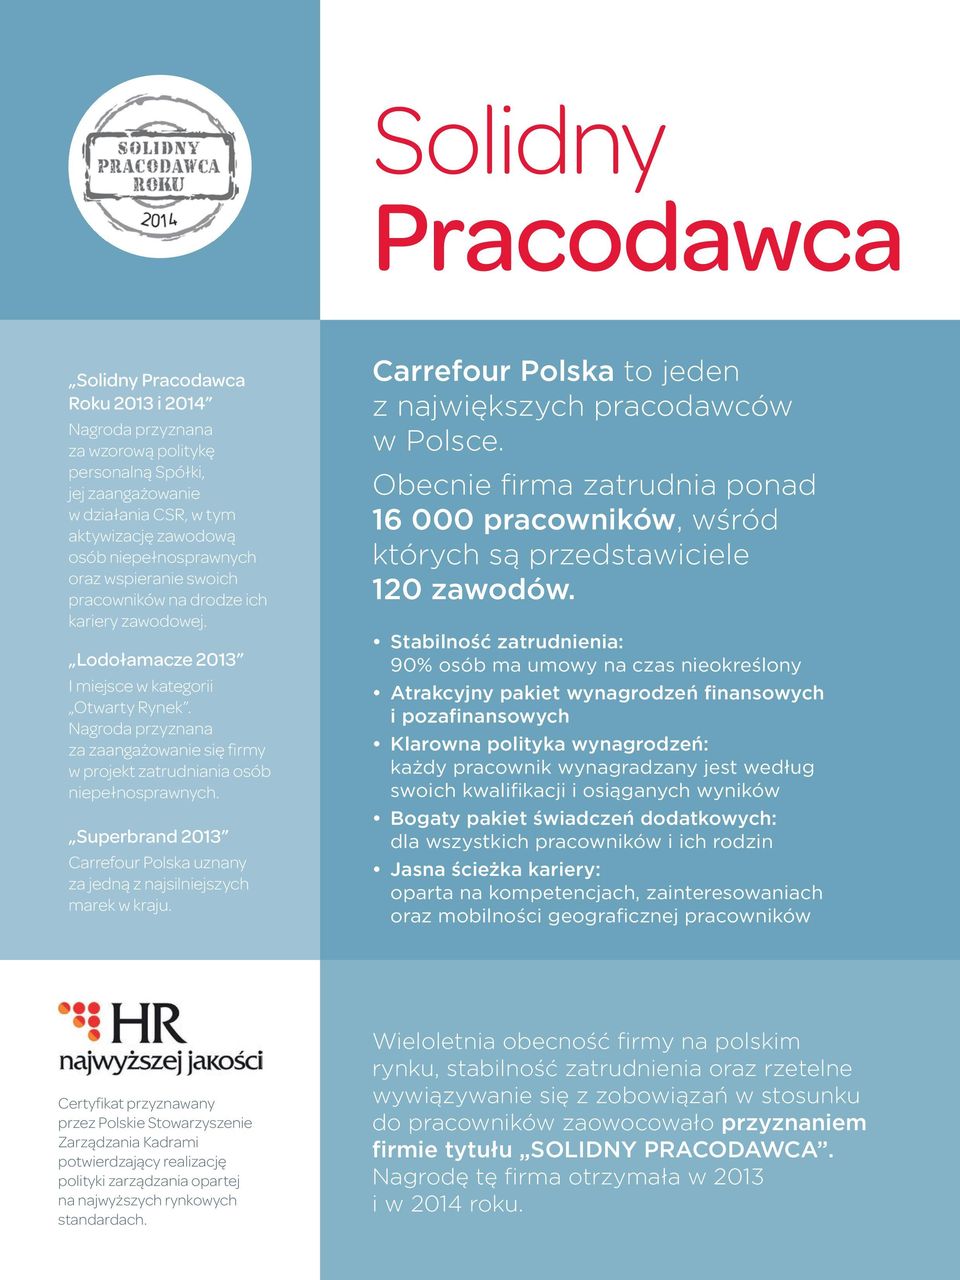 Nagroda przyznana za zaangażowanie się firmy w projekt zatrudniania osób niepełnosprawnych. Superbrand 2013 Carrefour Polska uznany za jedną z najsilniejszych marek w kraju.